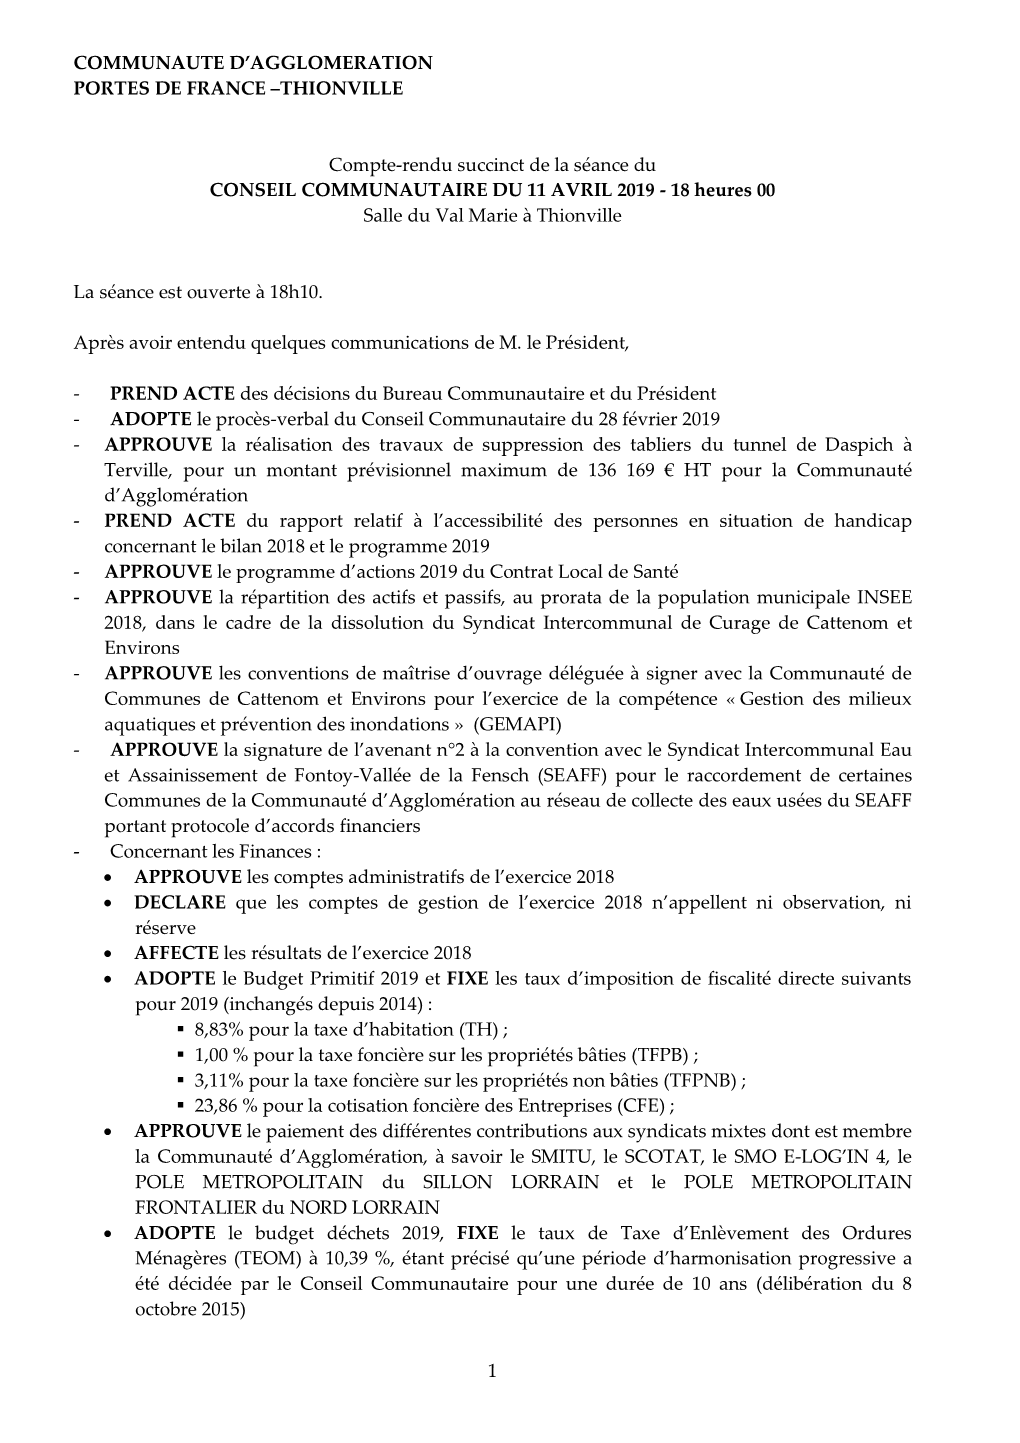 1 COMMUNAUTE D'agglomeration PORTES DE FRANCE –THIONVILLE Compte-Rendu Succinct De La Séance Du CONSEIL COMMUNAUTAIRE DU 11